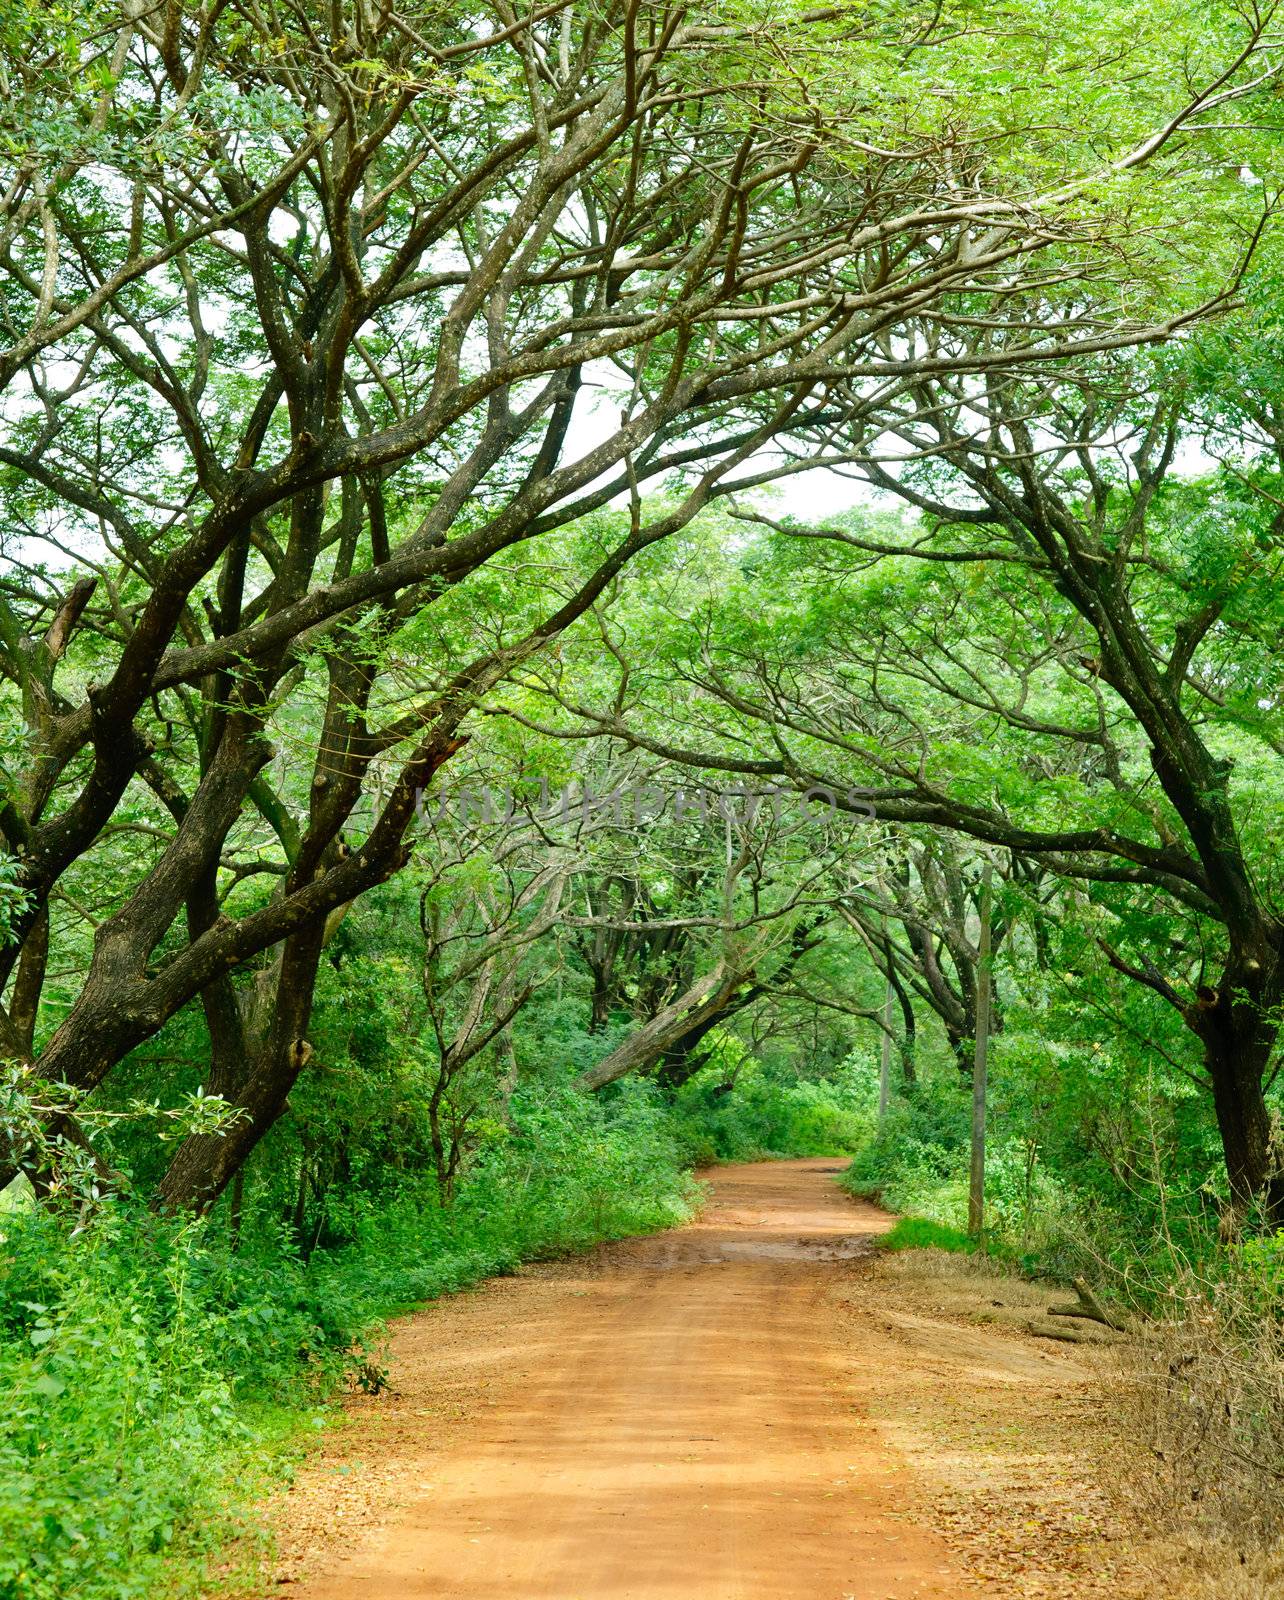 Dirt road through dense rainforest in Sri Lanka